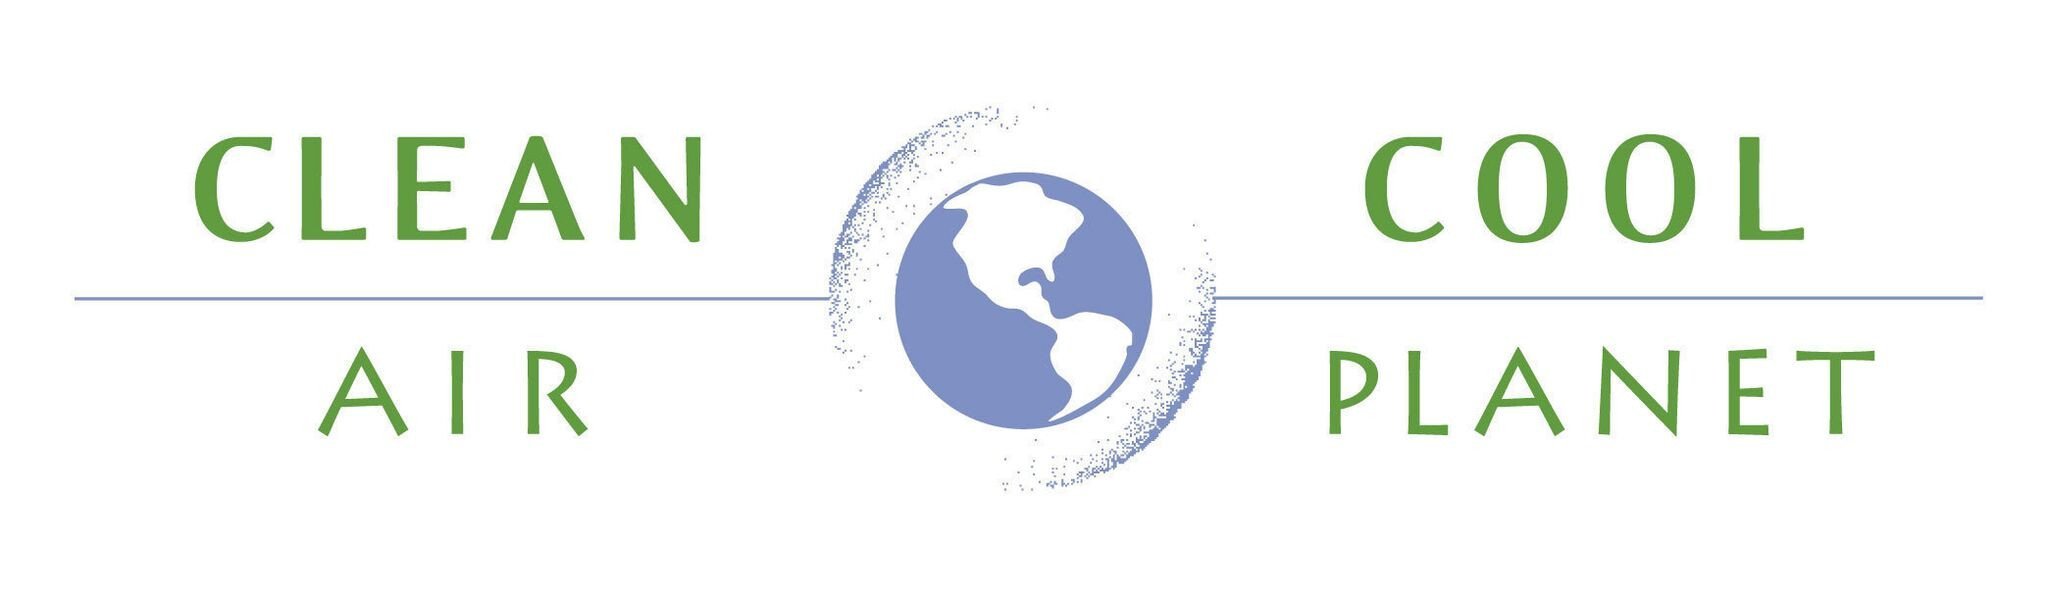 Clean Air Cool Planet logo